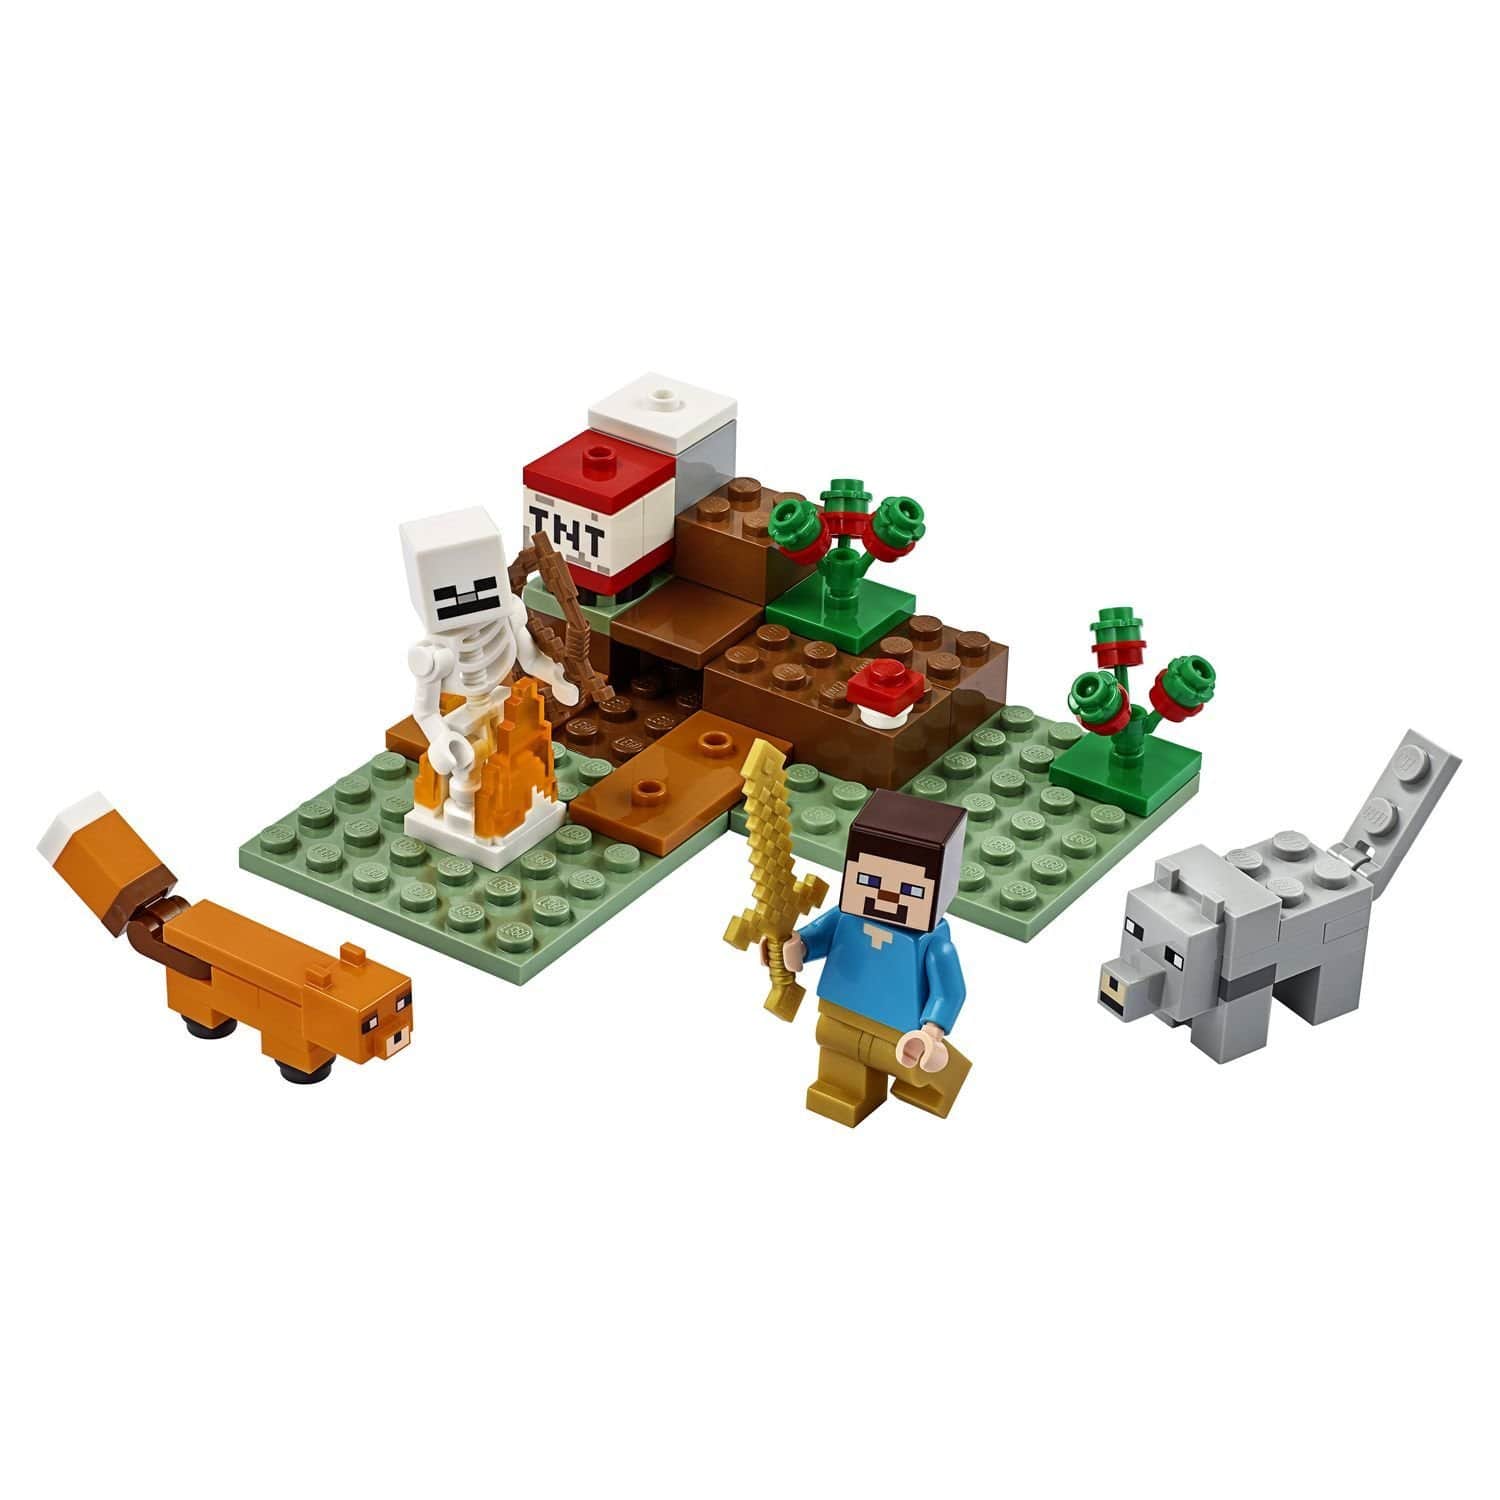 Конструктор LEGO Minecraft 21162 Приключения в тайге